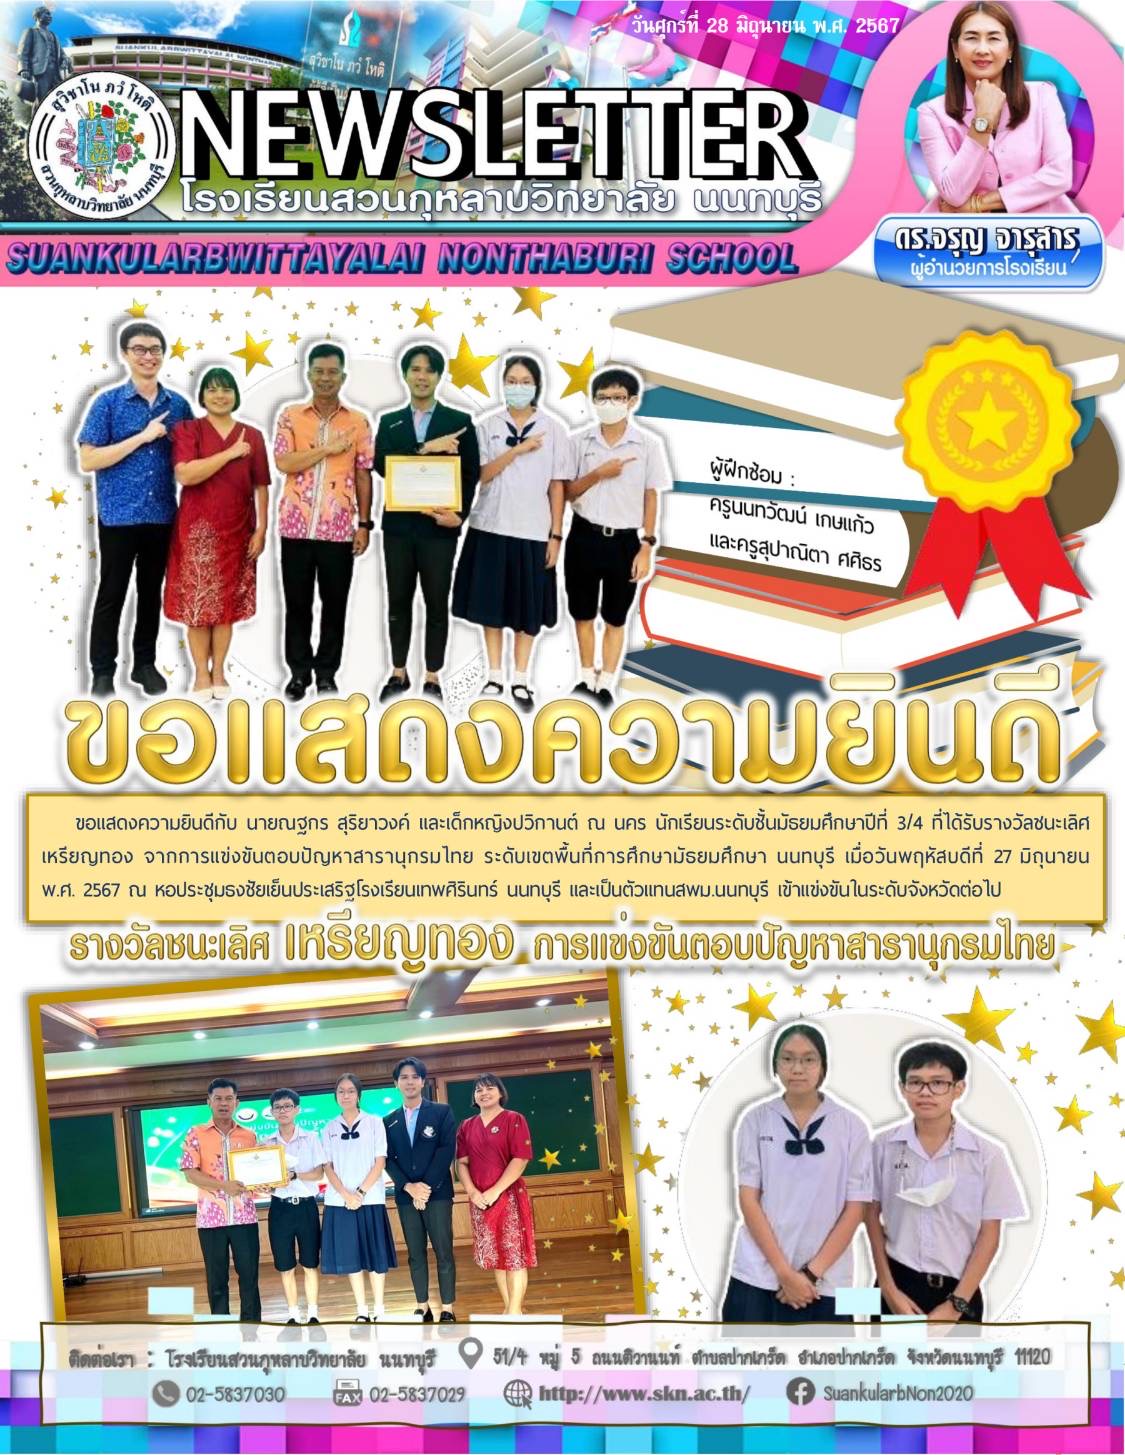 ขอแสดงความยินดีกับนายณฐกร สุริยาวงค์ และเด็กหญิงปวิกานต์ ณ นคร รางวัลชนะเลิศการแข่งขันตอบปัญหาสารานุกรมไทย ระดับเขตพื้นที่การศึกษานนทบุรี